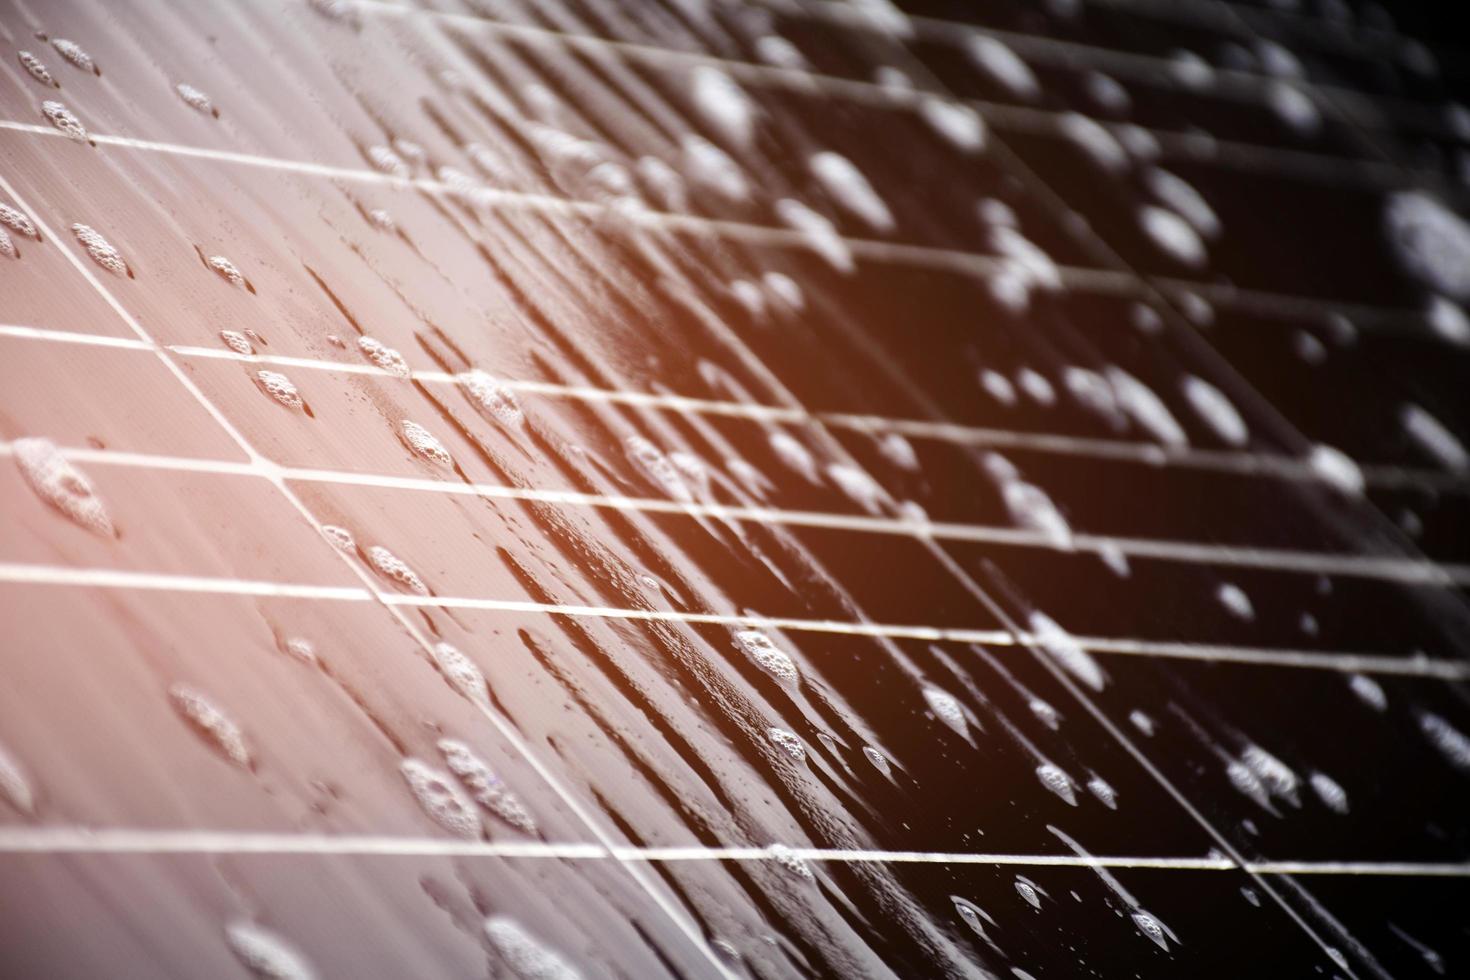 painel fotovoltaico closeup que tinha gotas d'água e esponjas na superfície, foco suave e seletivo, conceito para uso de energia natural na vida diária em todo o mundo. foto